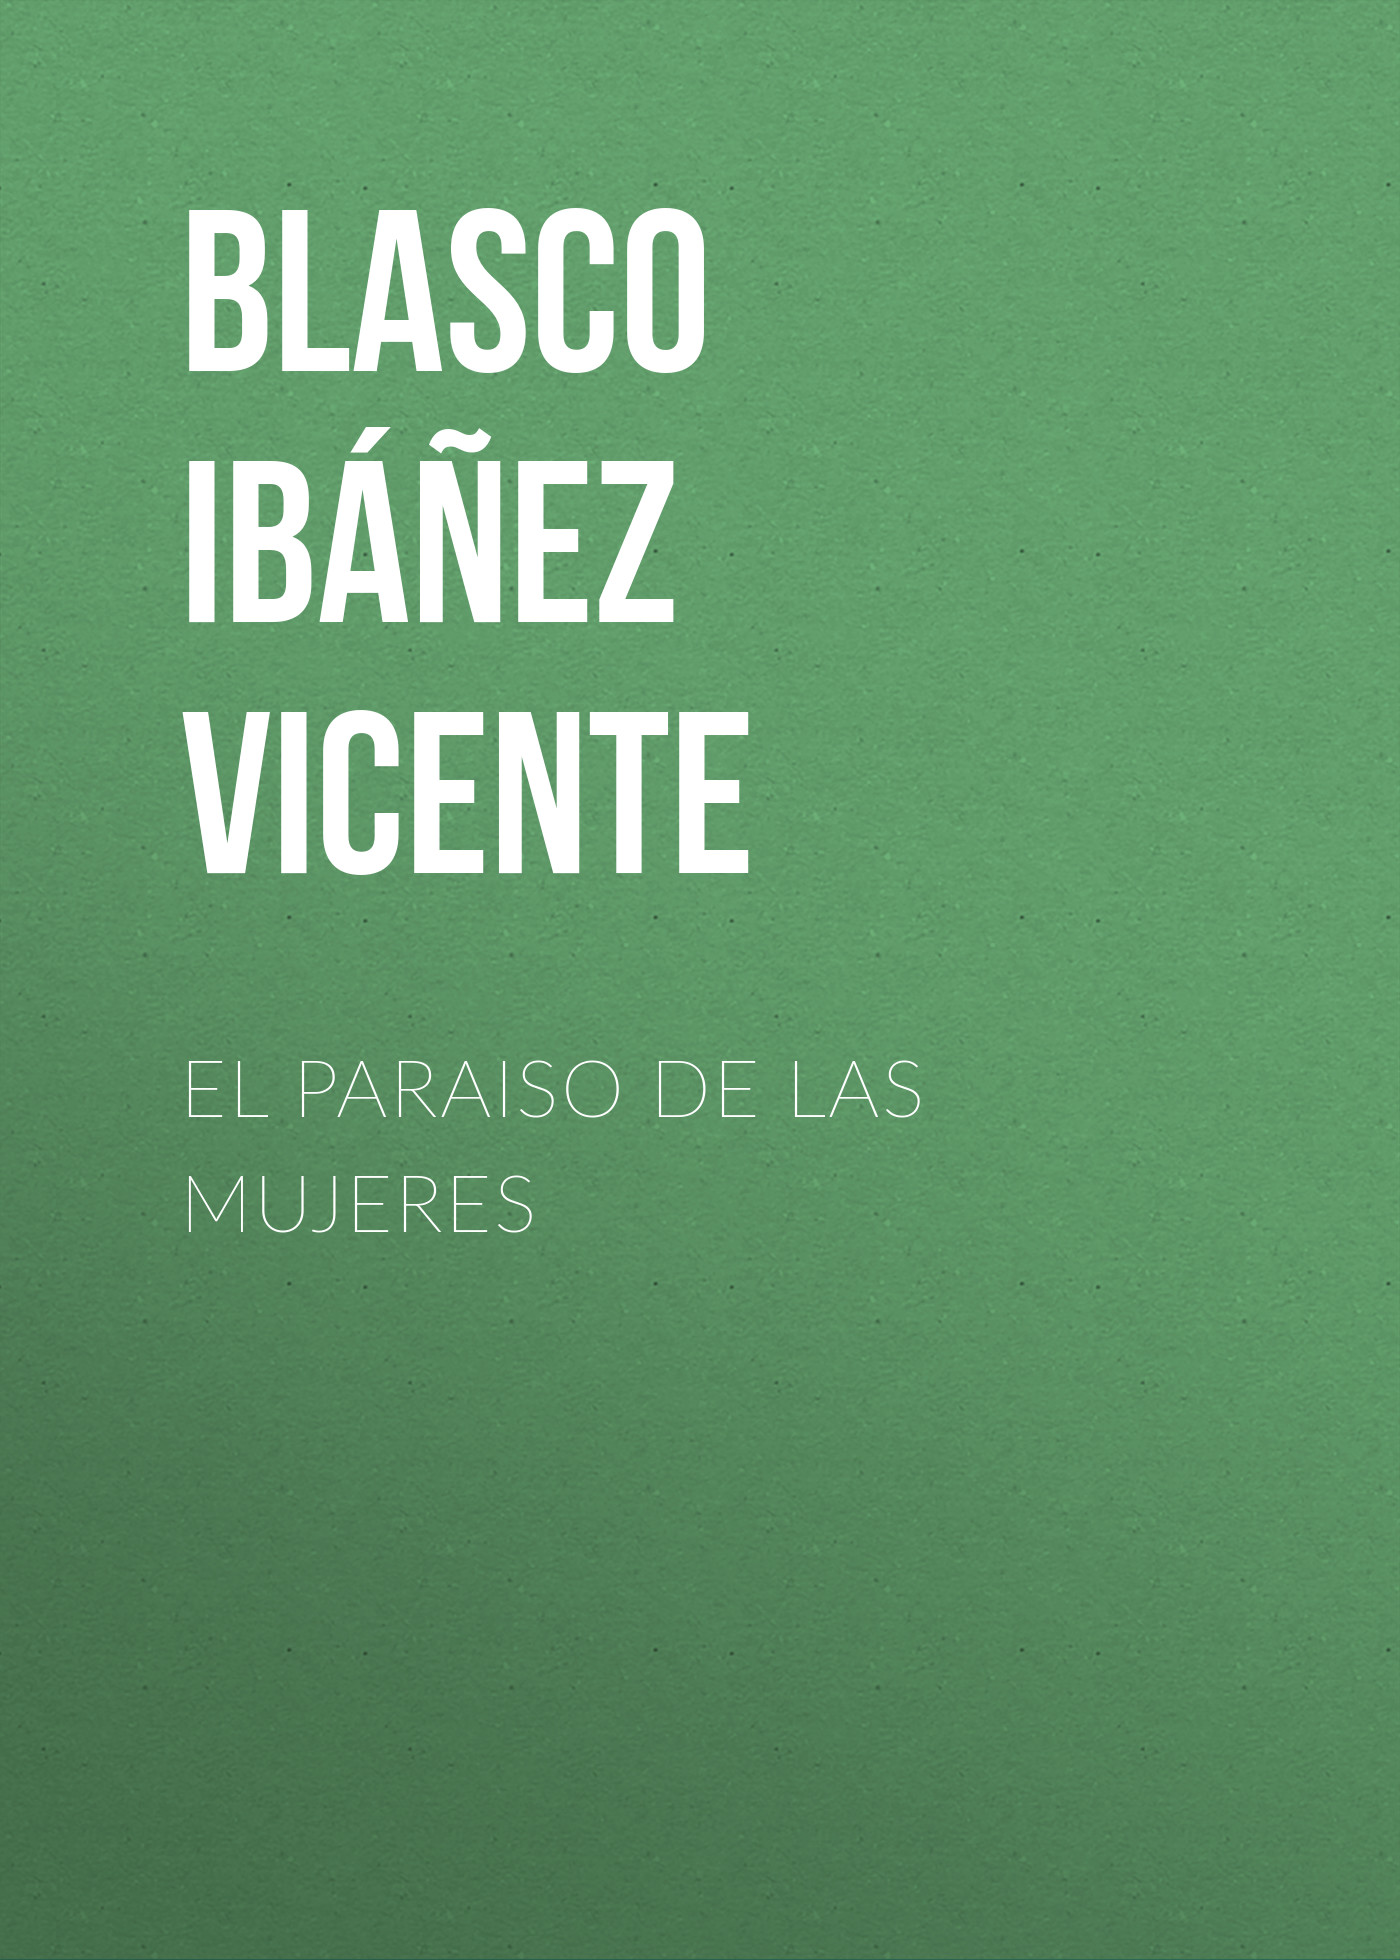 Книга El paraiso de las mujeres из серии , созданная Vicente Blasco Ibáñez, может относится к жанру Зарубежная классика, Зарубежная старинная литература. Стоимость электронной книги El paraiso de las mujeres с идентификатором 36362518 составляет 0 руб.